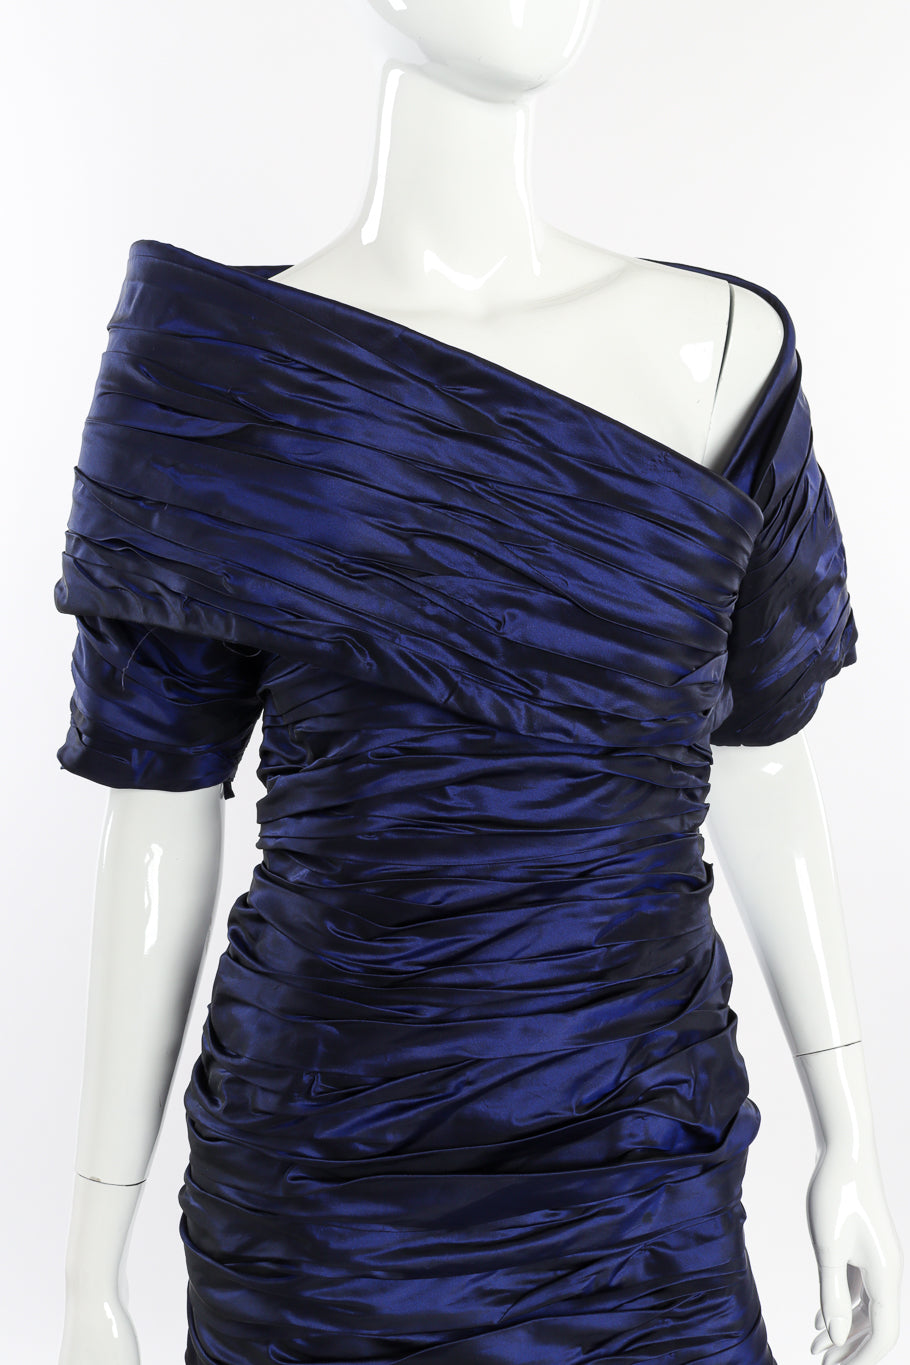 Vintage Jacqueline de Ribes Taffeta Wrap Dress front on mannequin closeup @recessla